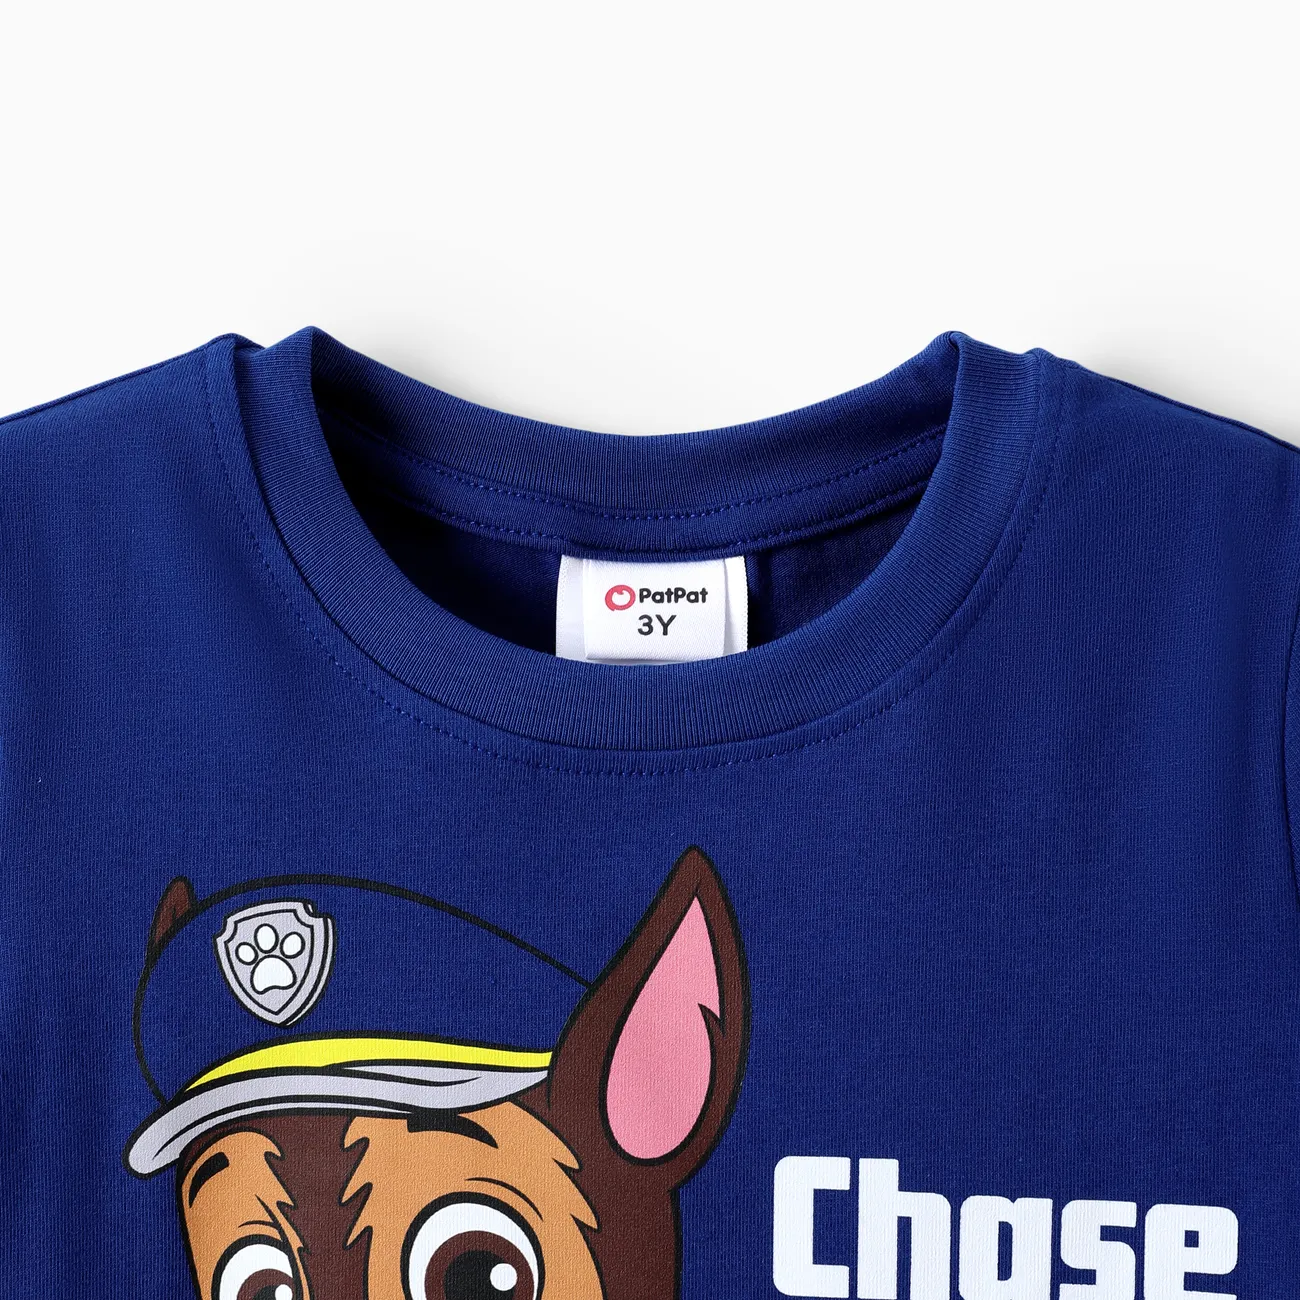 Patrulla de cachorros Niño pequeño Unisex Infantil Perro Manga corta Camiseta azul real big image 1